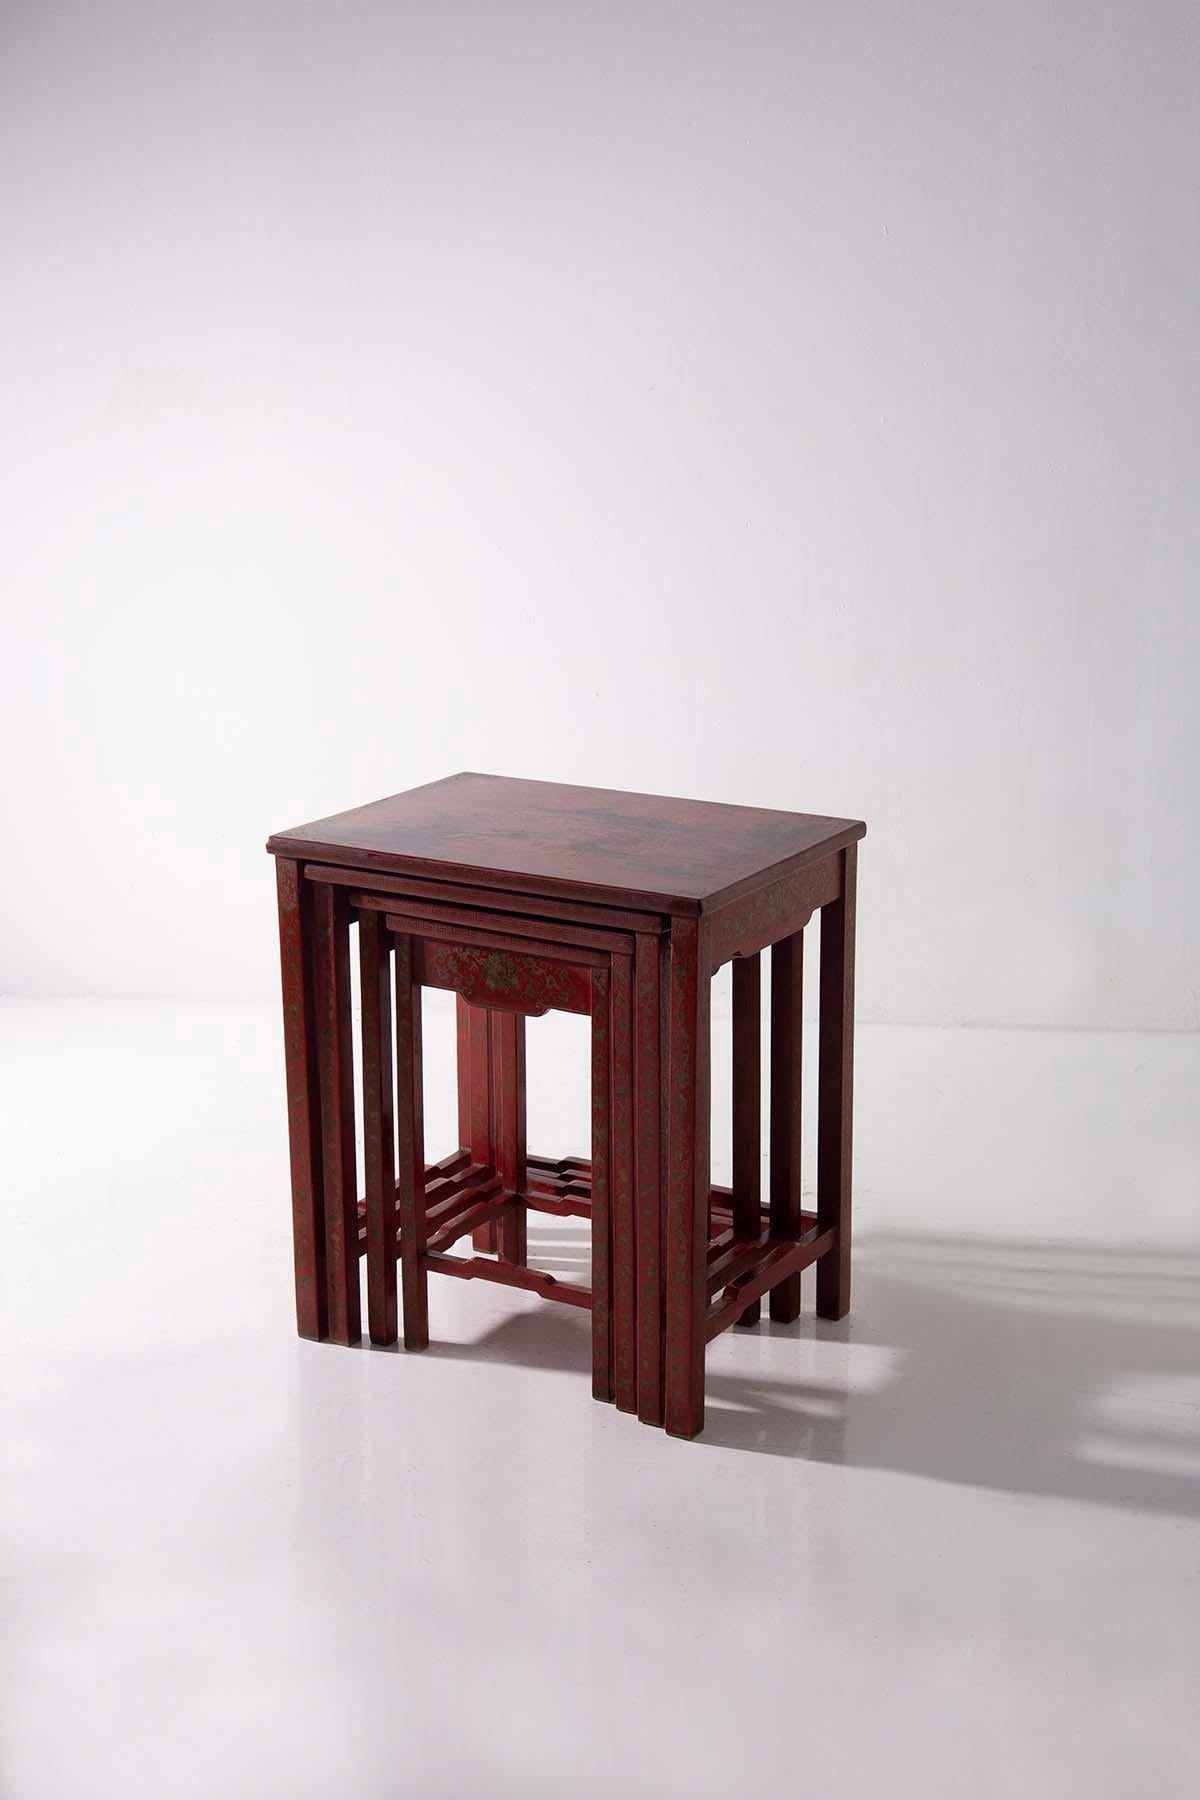 Dans le domaine des meubles anciens, votre nid de tables quatuor chinoises en laque rouge n'est rien de moins qu'un trésor captivant qui jette un pont entre deux siècles, mettant en valeur l'allure intemporelle de l'artisanat chinois. Ces tables